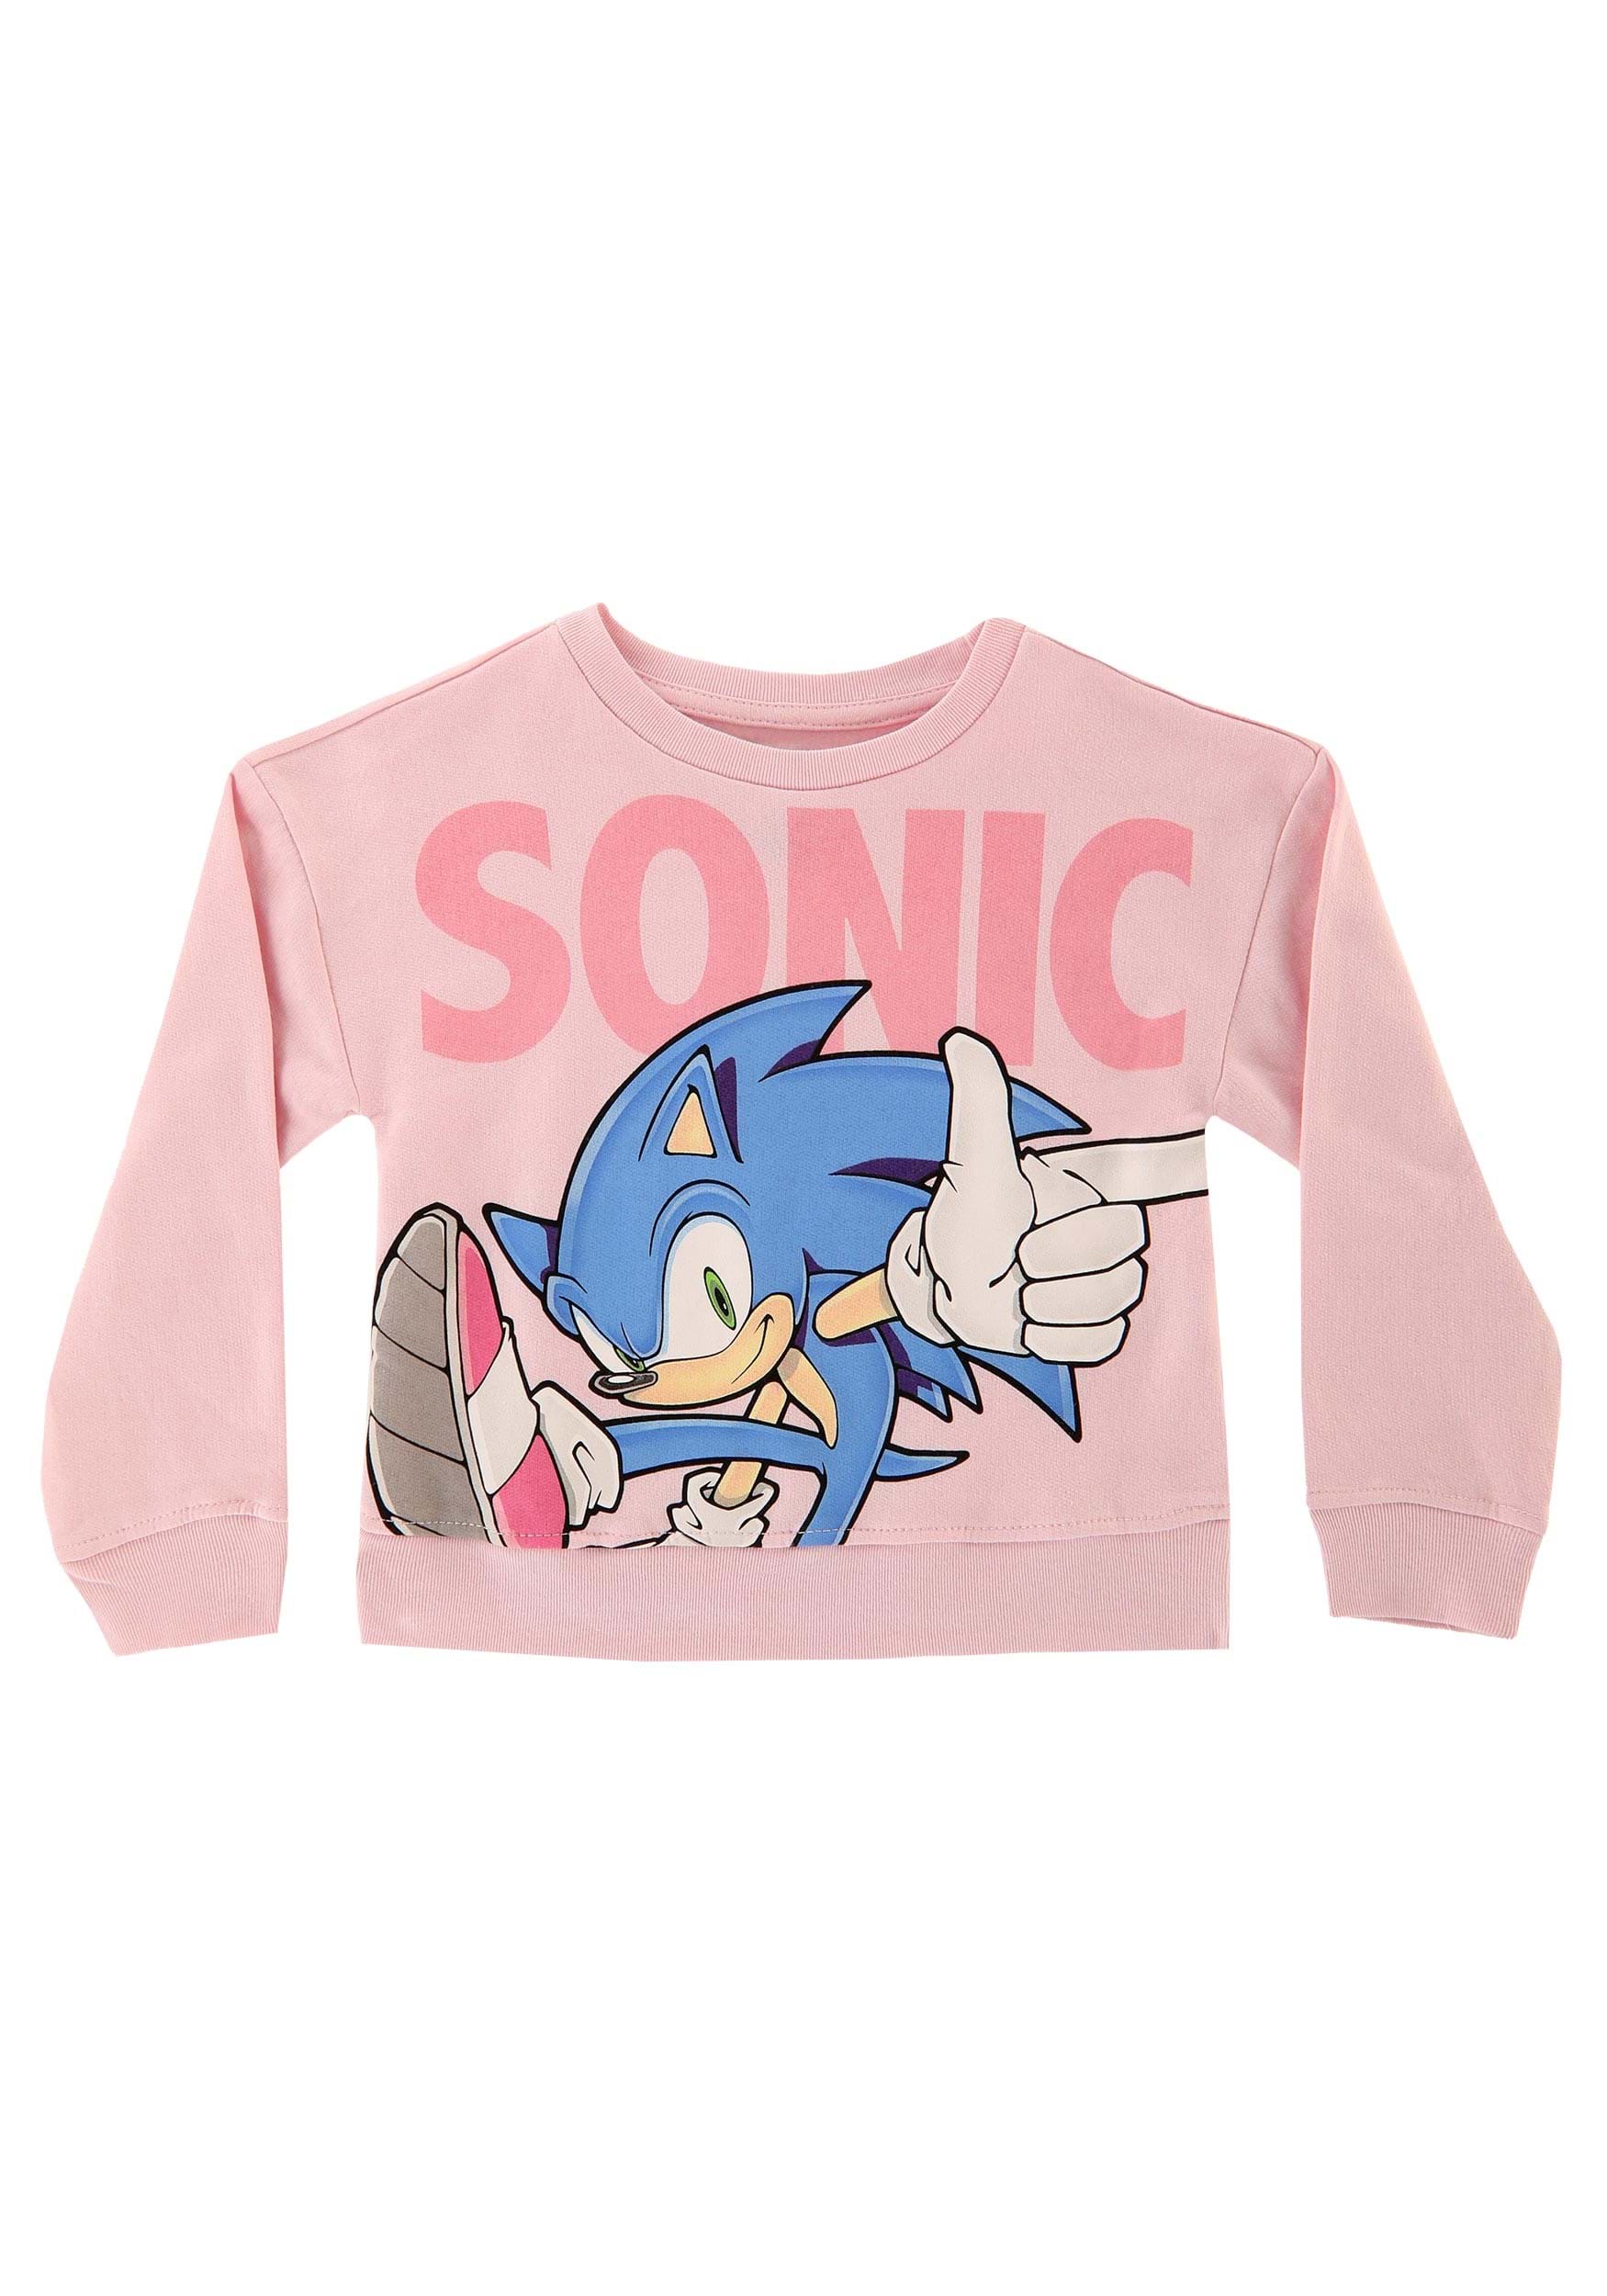 Sonic The Hedgehog Girl's Sweatshirt